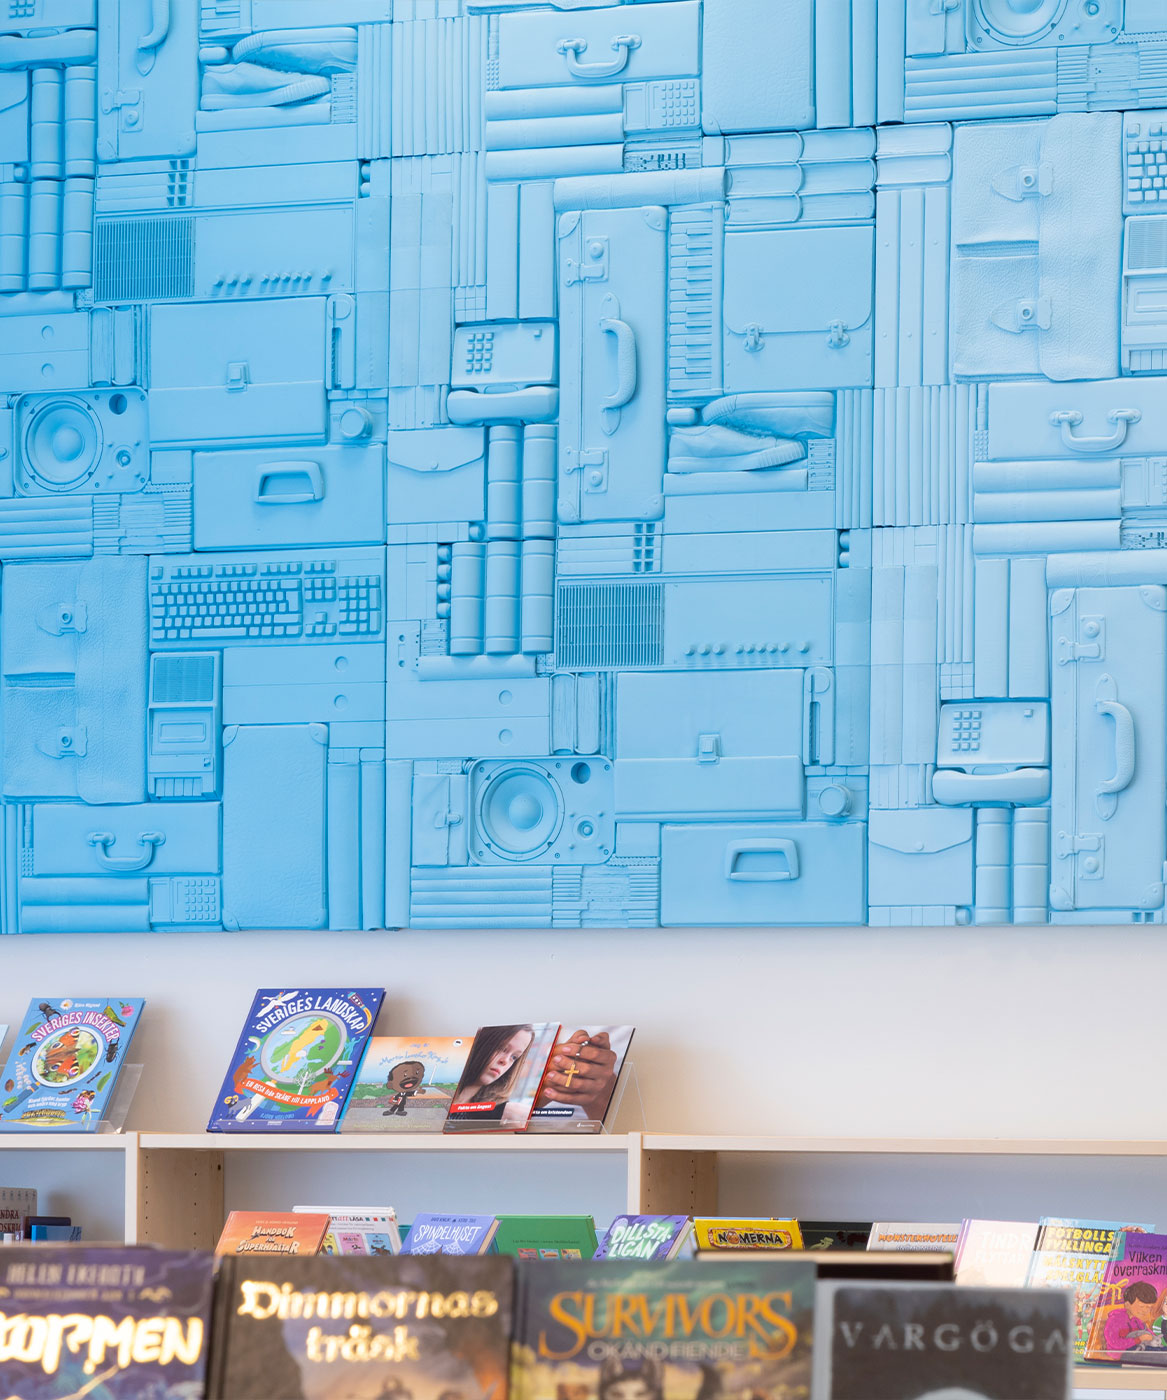 en vägg i ett bibliotek är täckt av saker som portföljer, telefoner och bokryggar, allt färgat i samma ljusblå färg